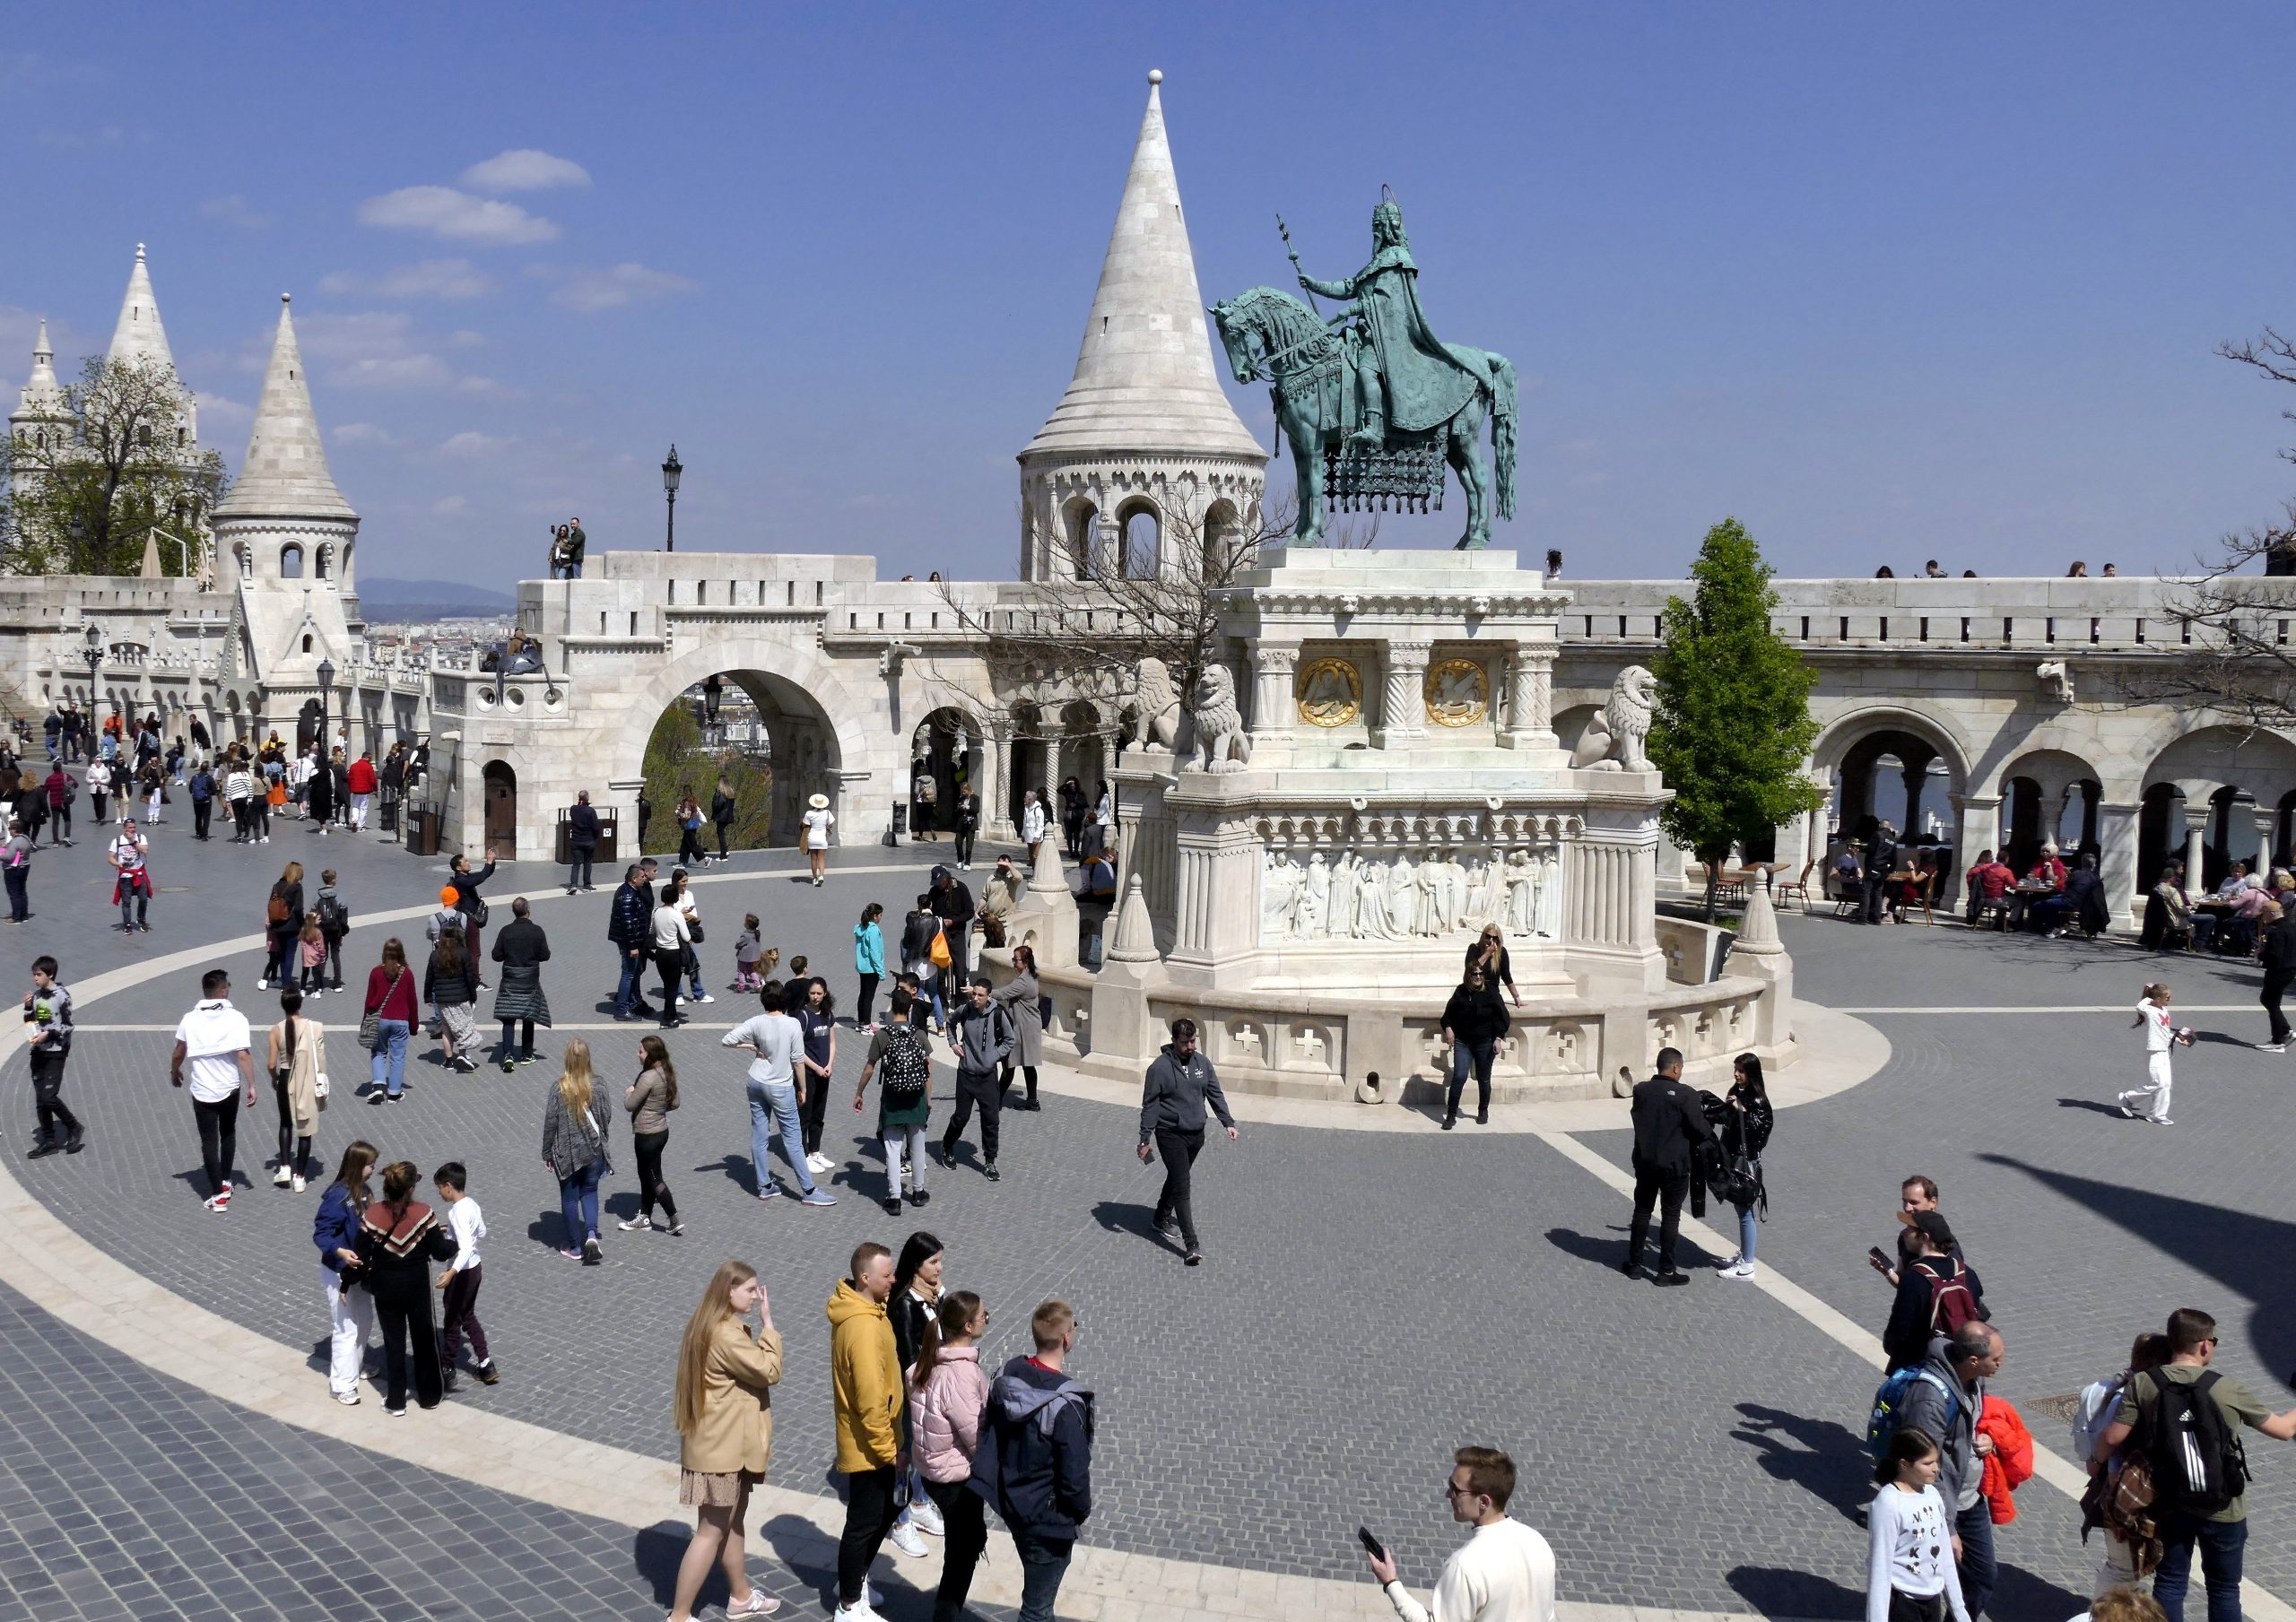 Ungarn erhält prestigeträchtige Tourismuspreise aus China